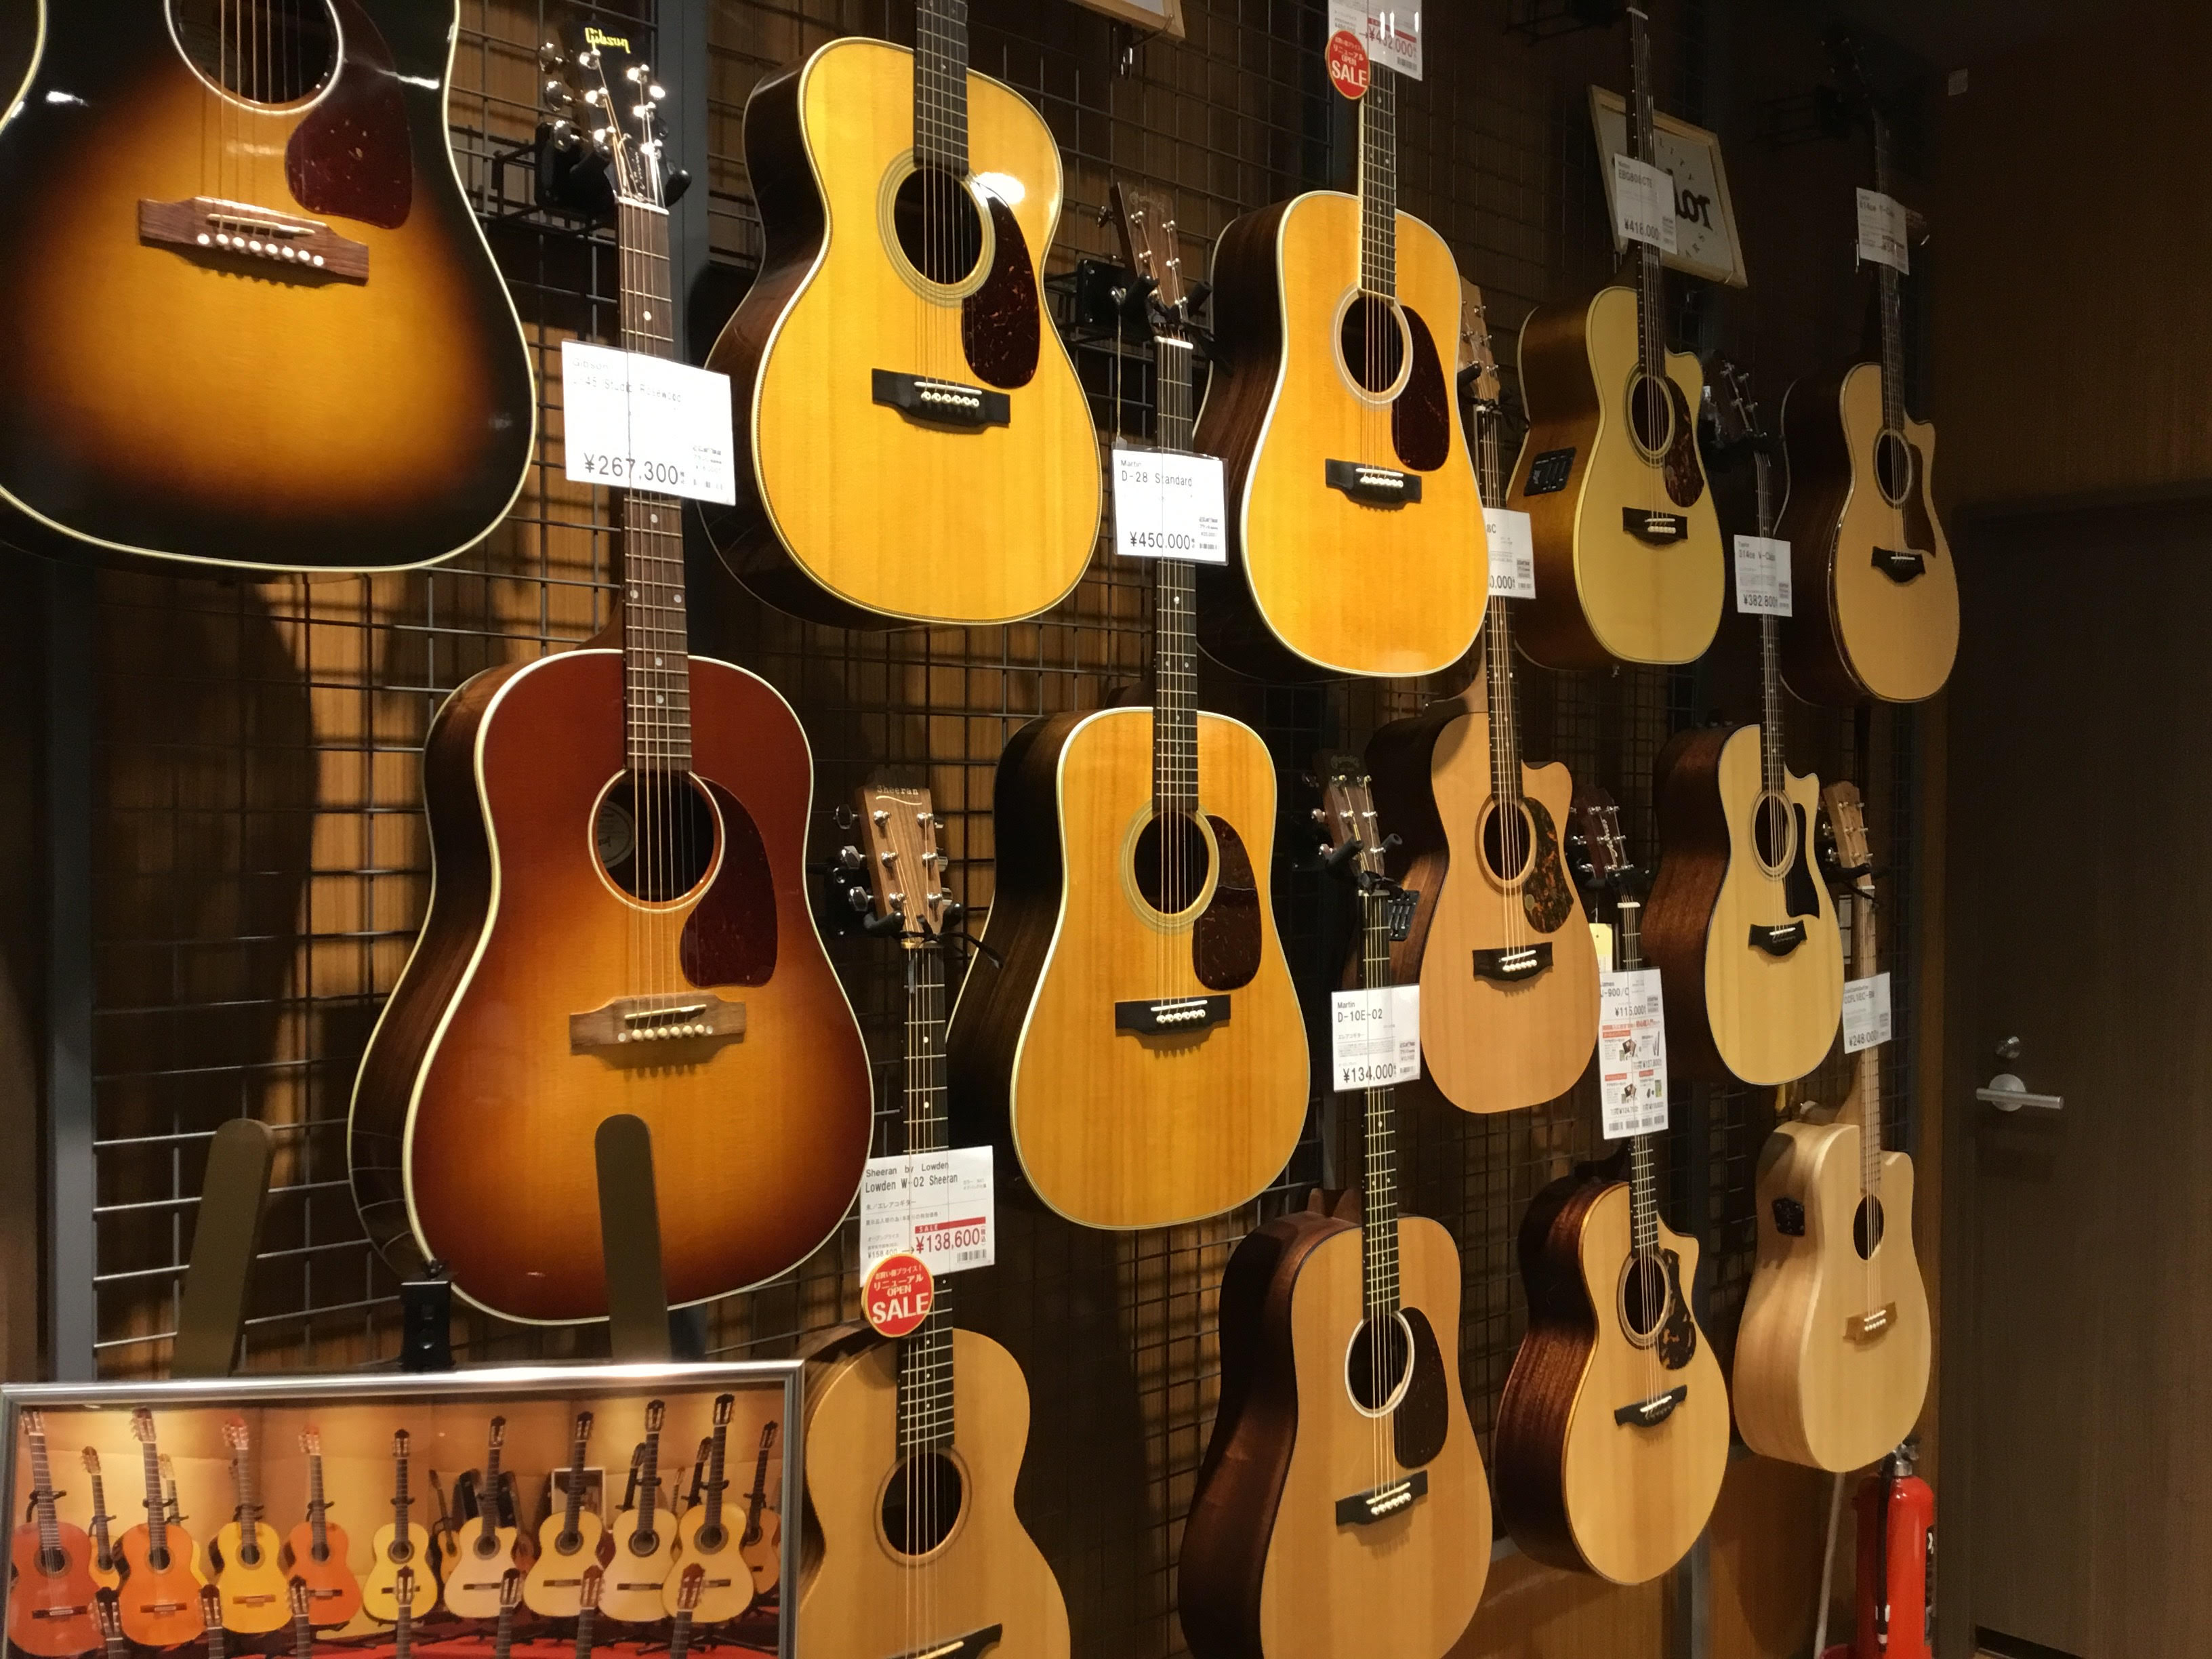 CONTENTS厳選したアコースティックギター（お買得品、入荷数の少ないモデル・・）を展示中！お支払い方法お問い合わせ厳選したアコースティックギター（お買得品、入荷数の少ないモデル・・）を展示中！ ワンランク上のギターをご検討中の皆様・・憧れのブランドのギターはいかがですか？作りの良い日本製のギター […]